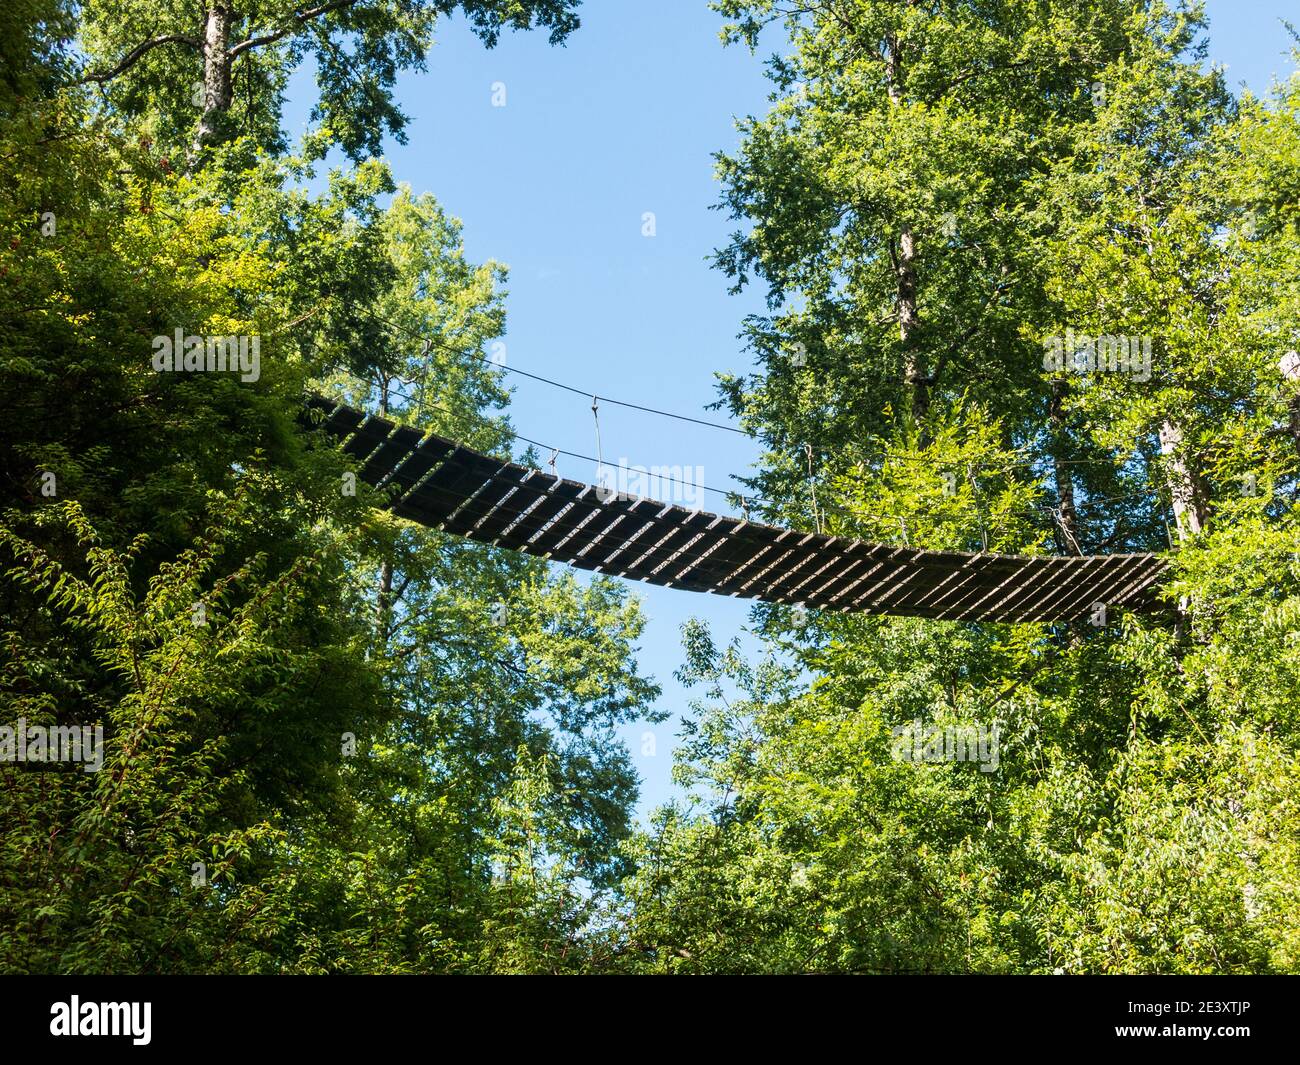 Wooden suspension bridge walkway in Huilo Huilo Biological Reserve, Los Ríos Region, southern Chile. Stock Photo